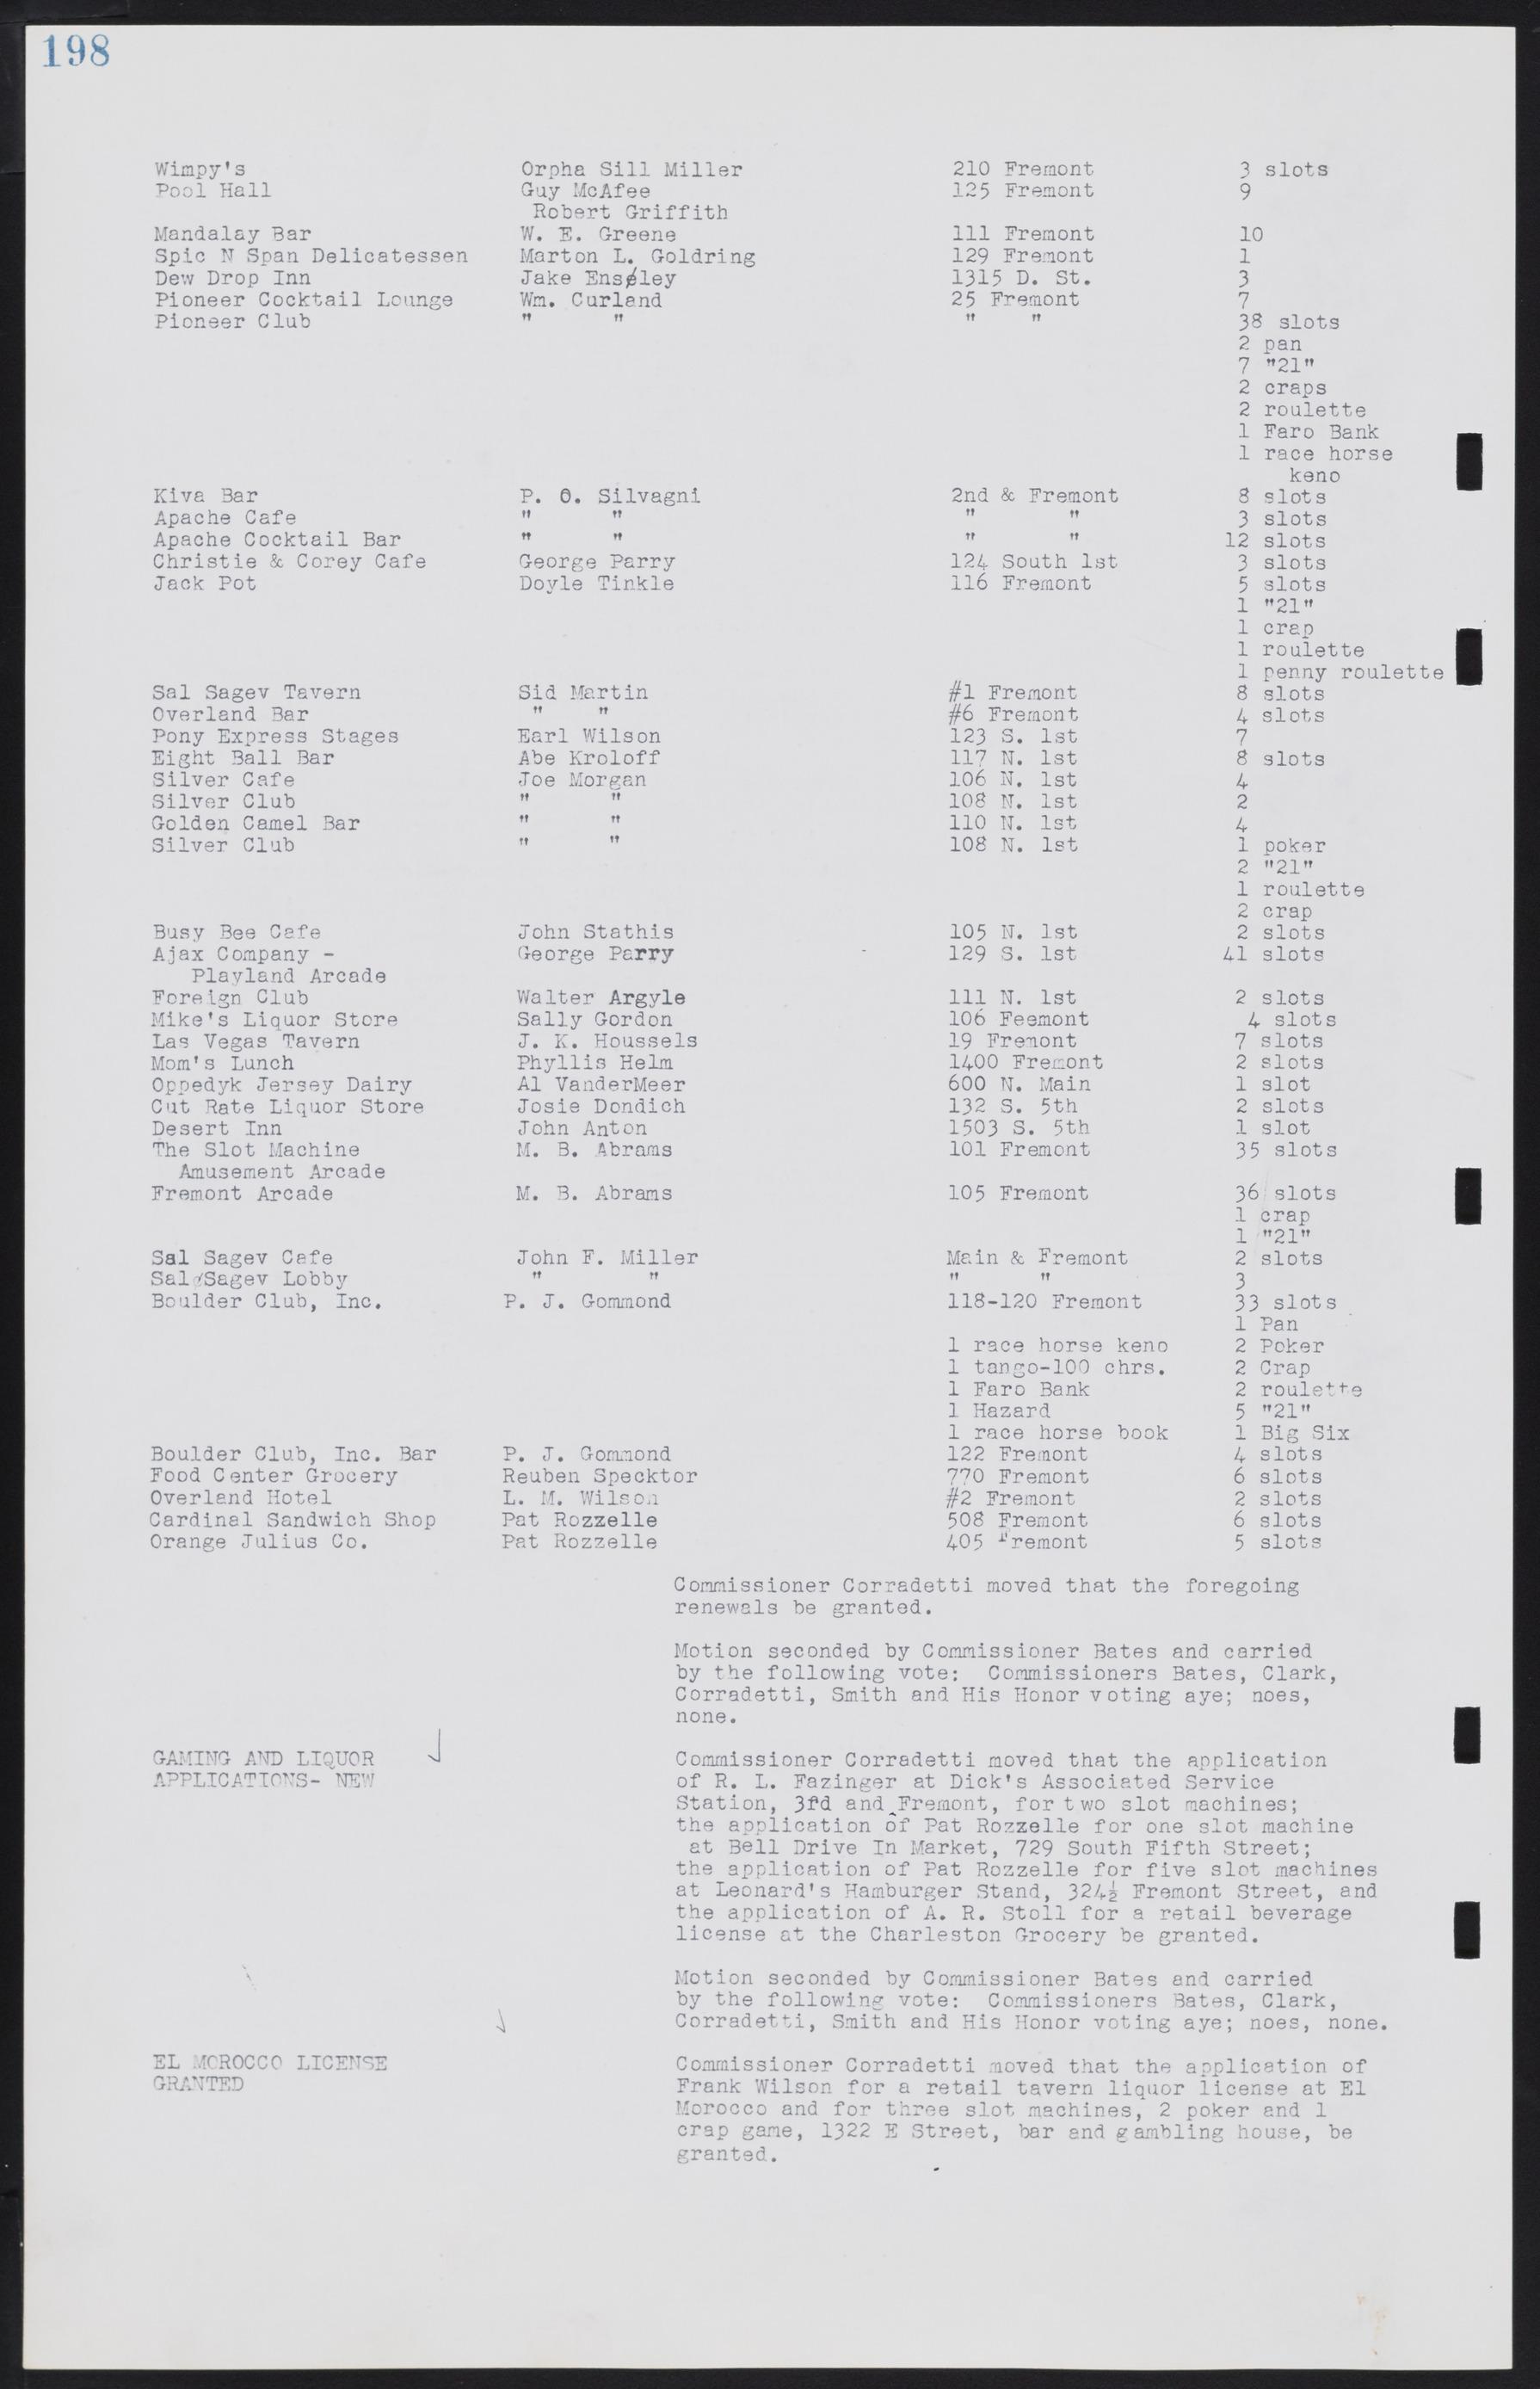 Las Vegas City Commission Minutes, August 11, 1942 to December 30, 1946, lvc000005-217